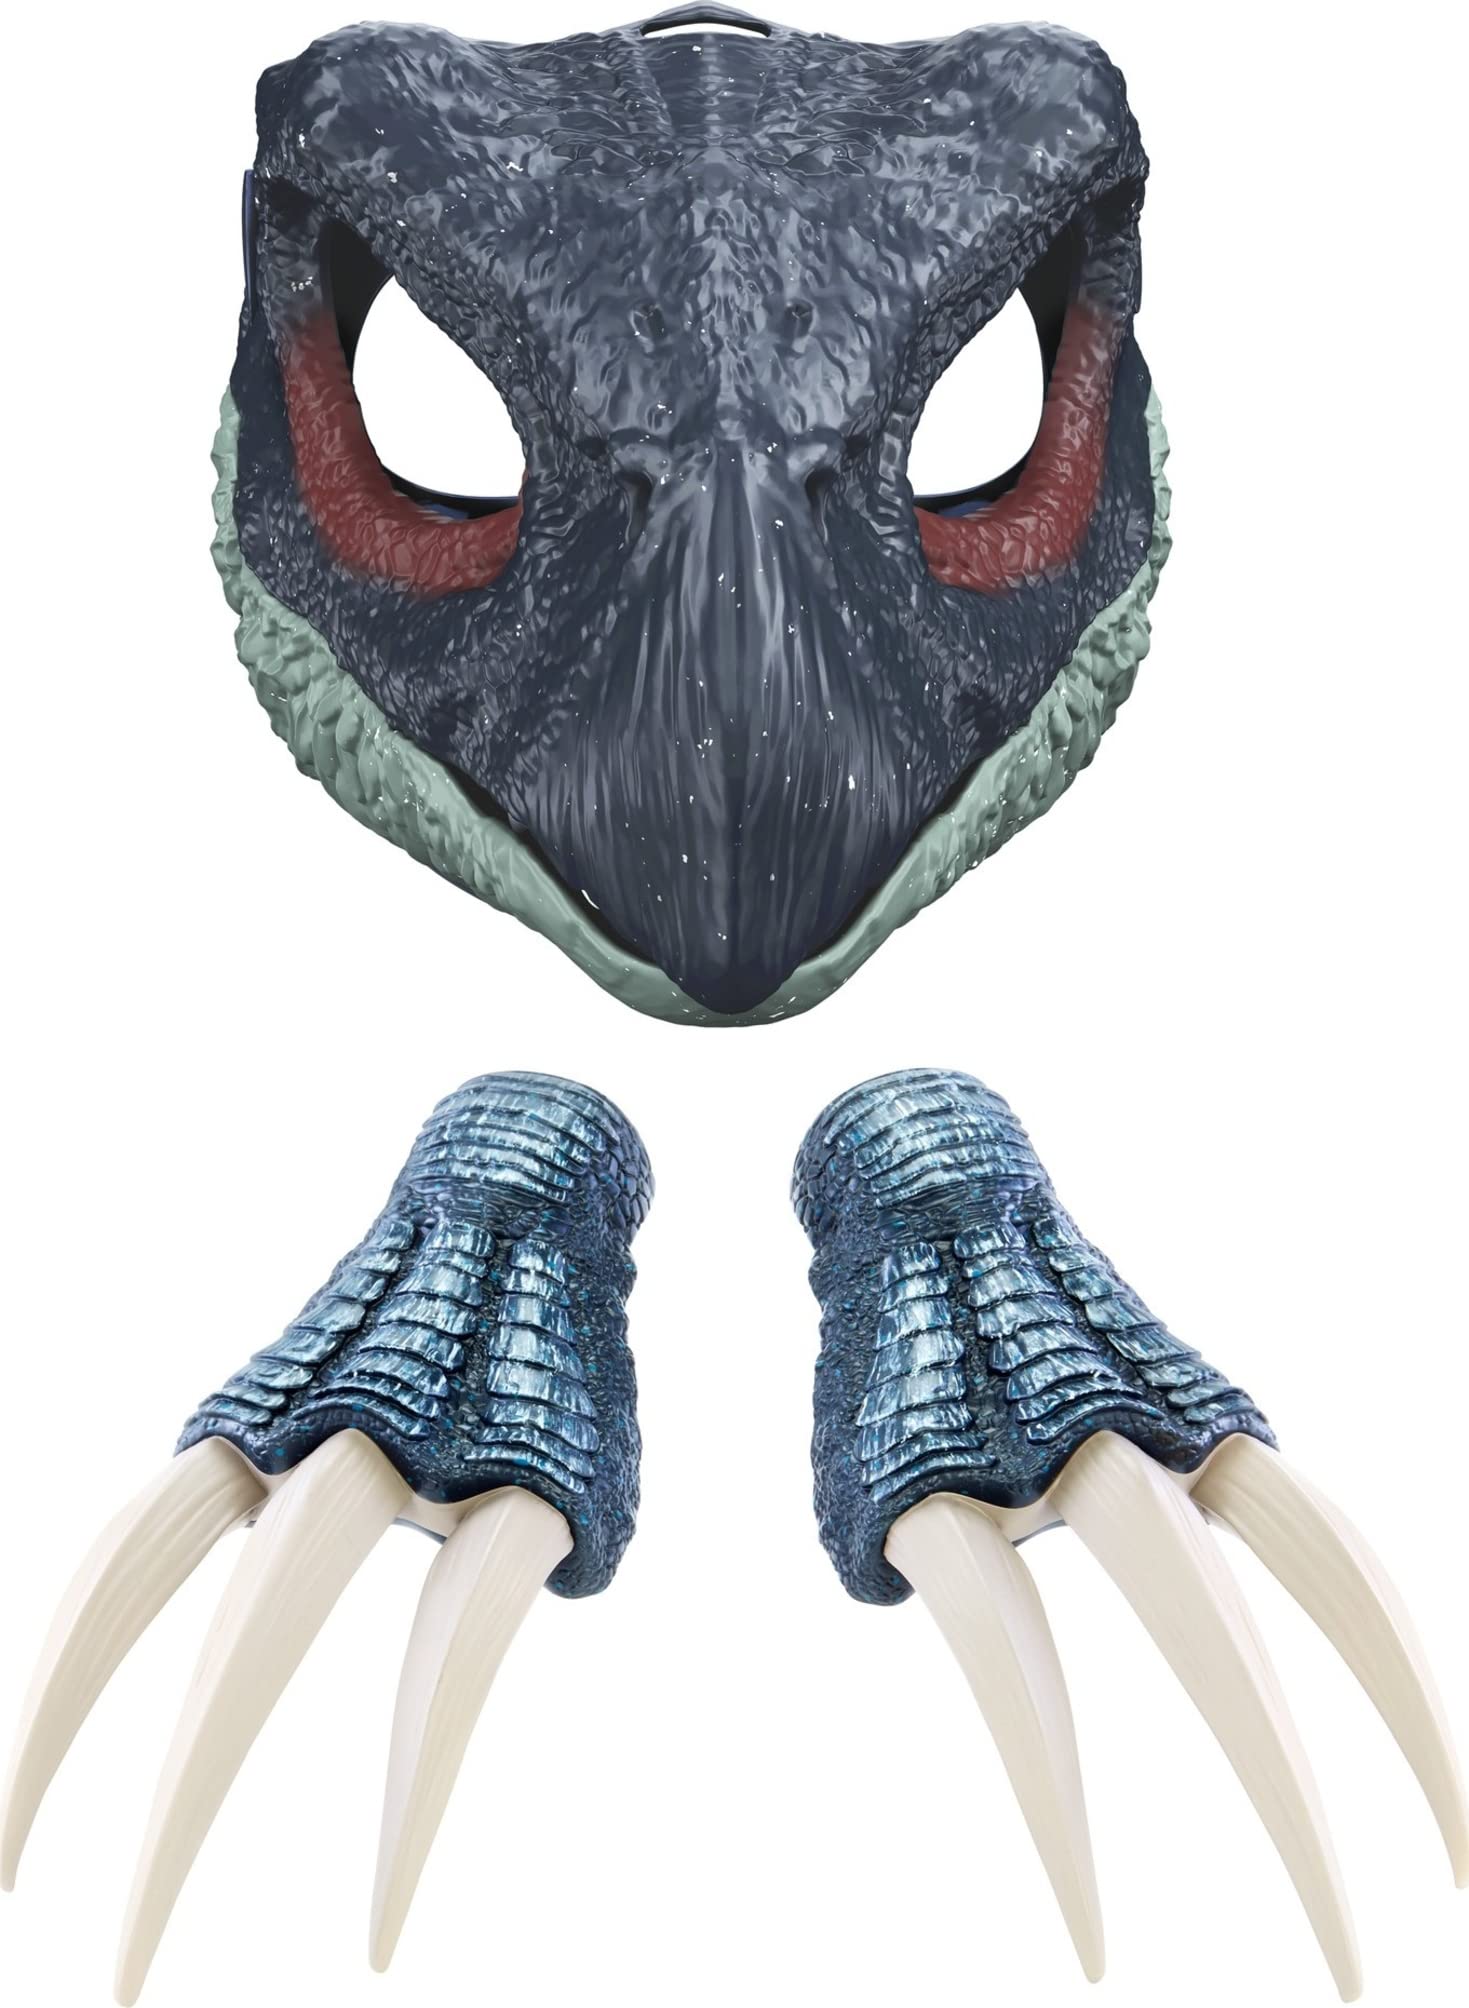 Jurassic World Toys Dominion Therizinosaurus Roleplay Bundle with Dinosaur Mask with Sound & Slasher Claws - $15.57 - Amazon